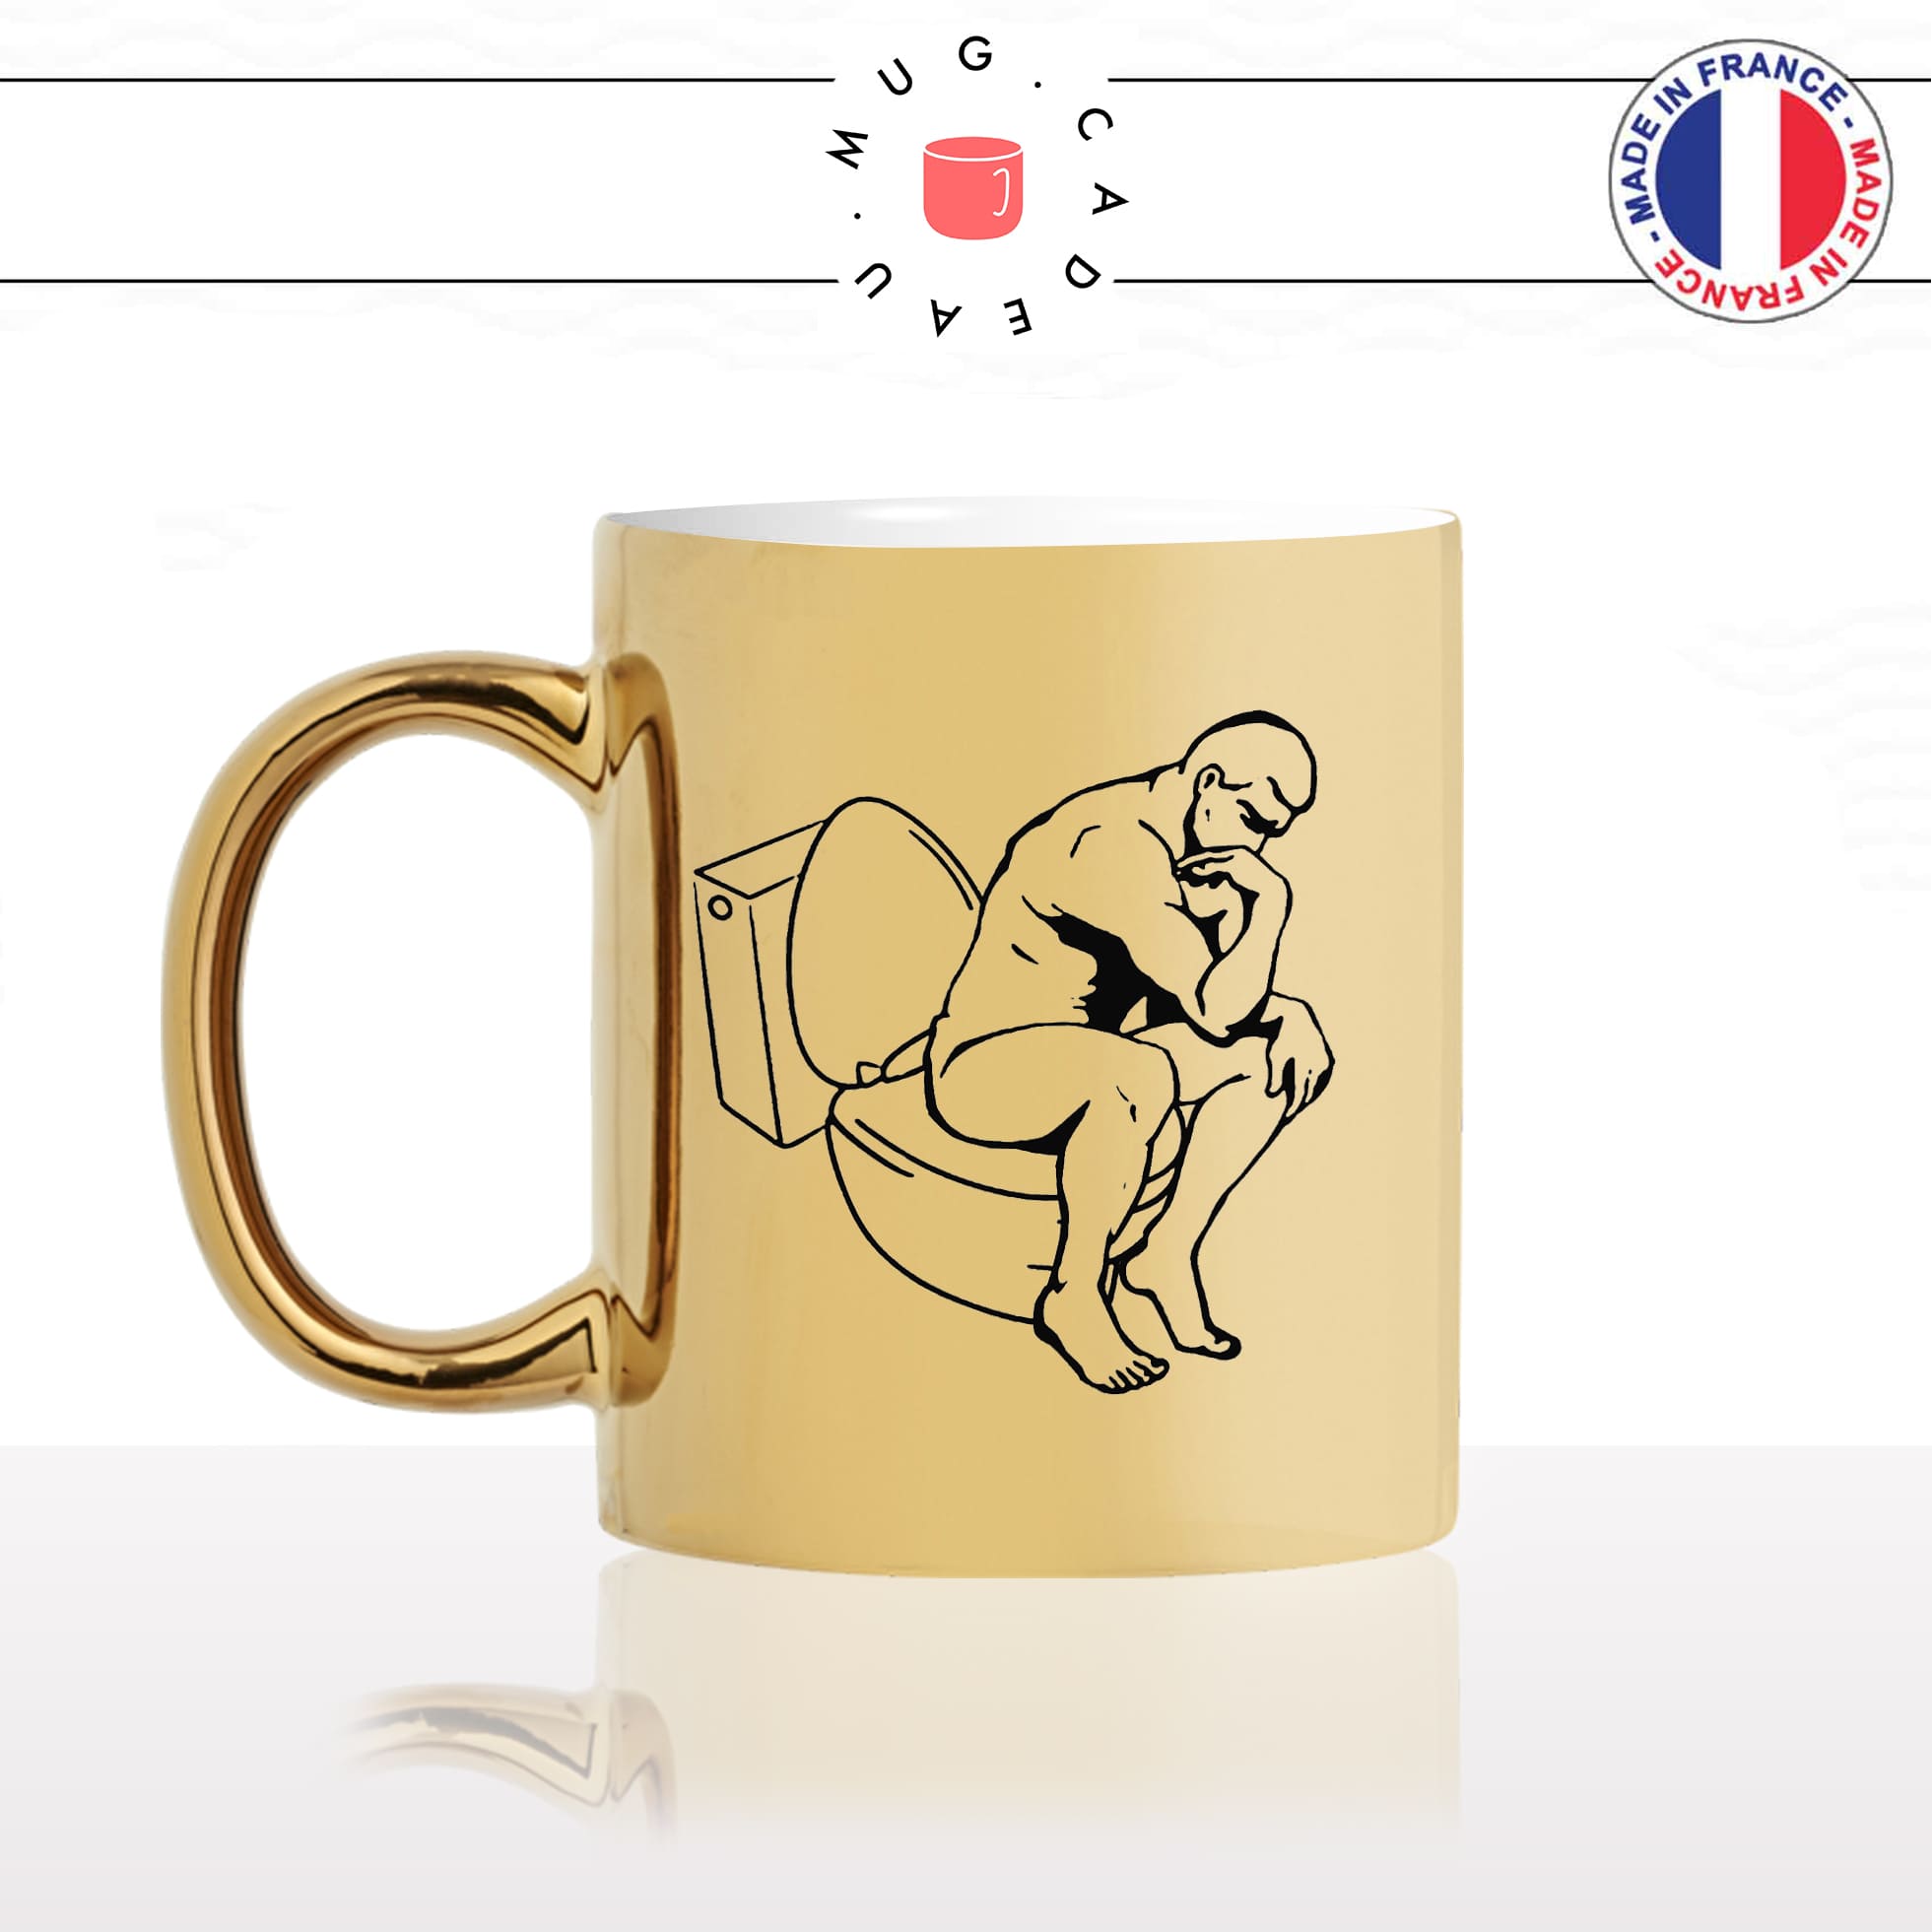 mug-tasse-or-doré-gold-le-penseur-de-rodin-aux-toilettes-sculpture-art-parodie-homme-humour-fun-idée-cadeau-originale-cool